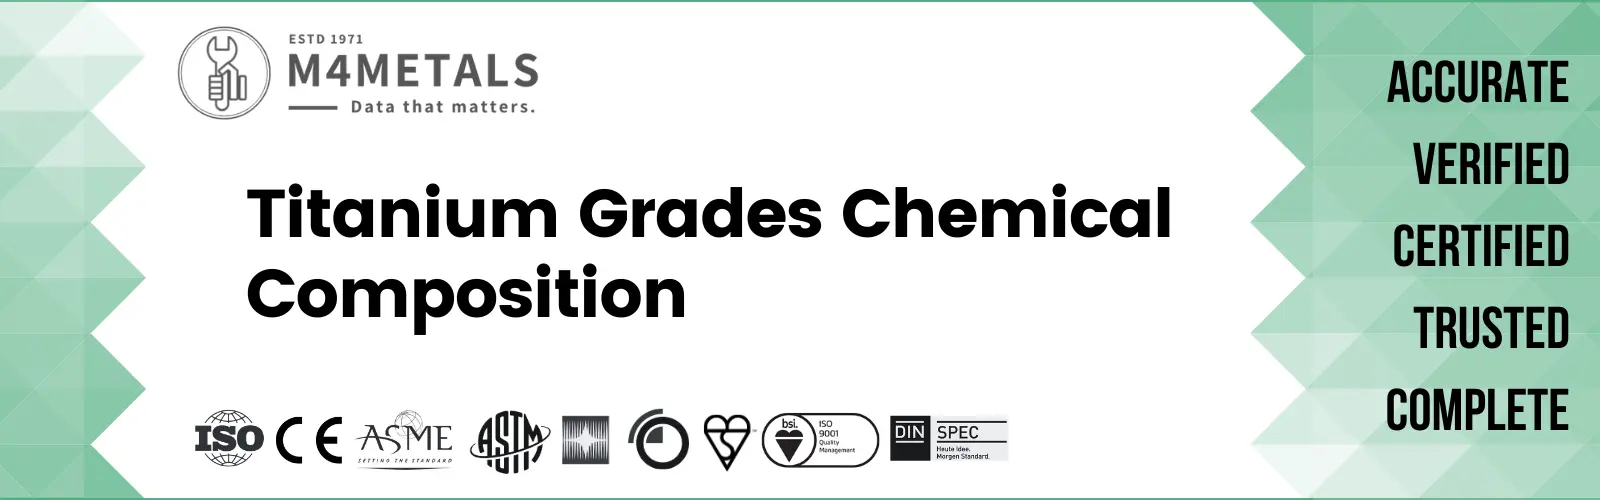 Titanium Grades Chemical Composition